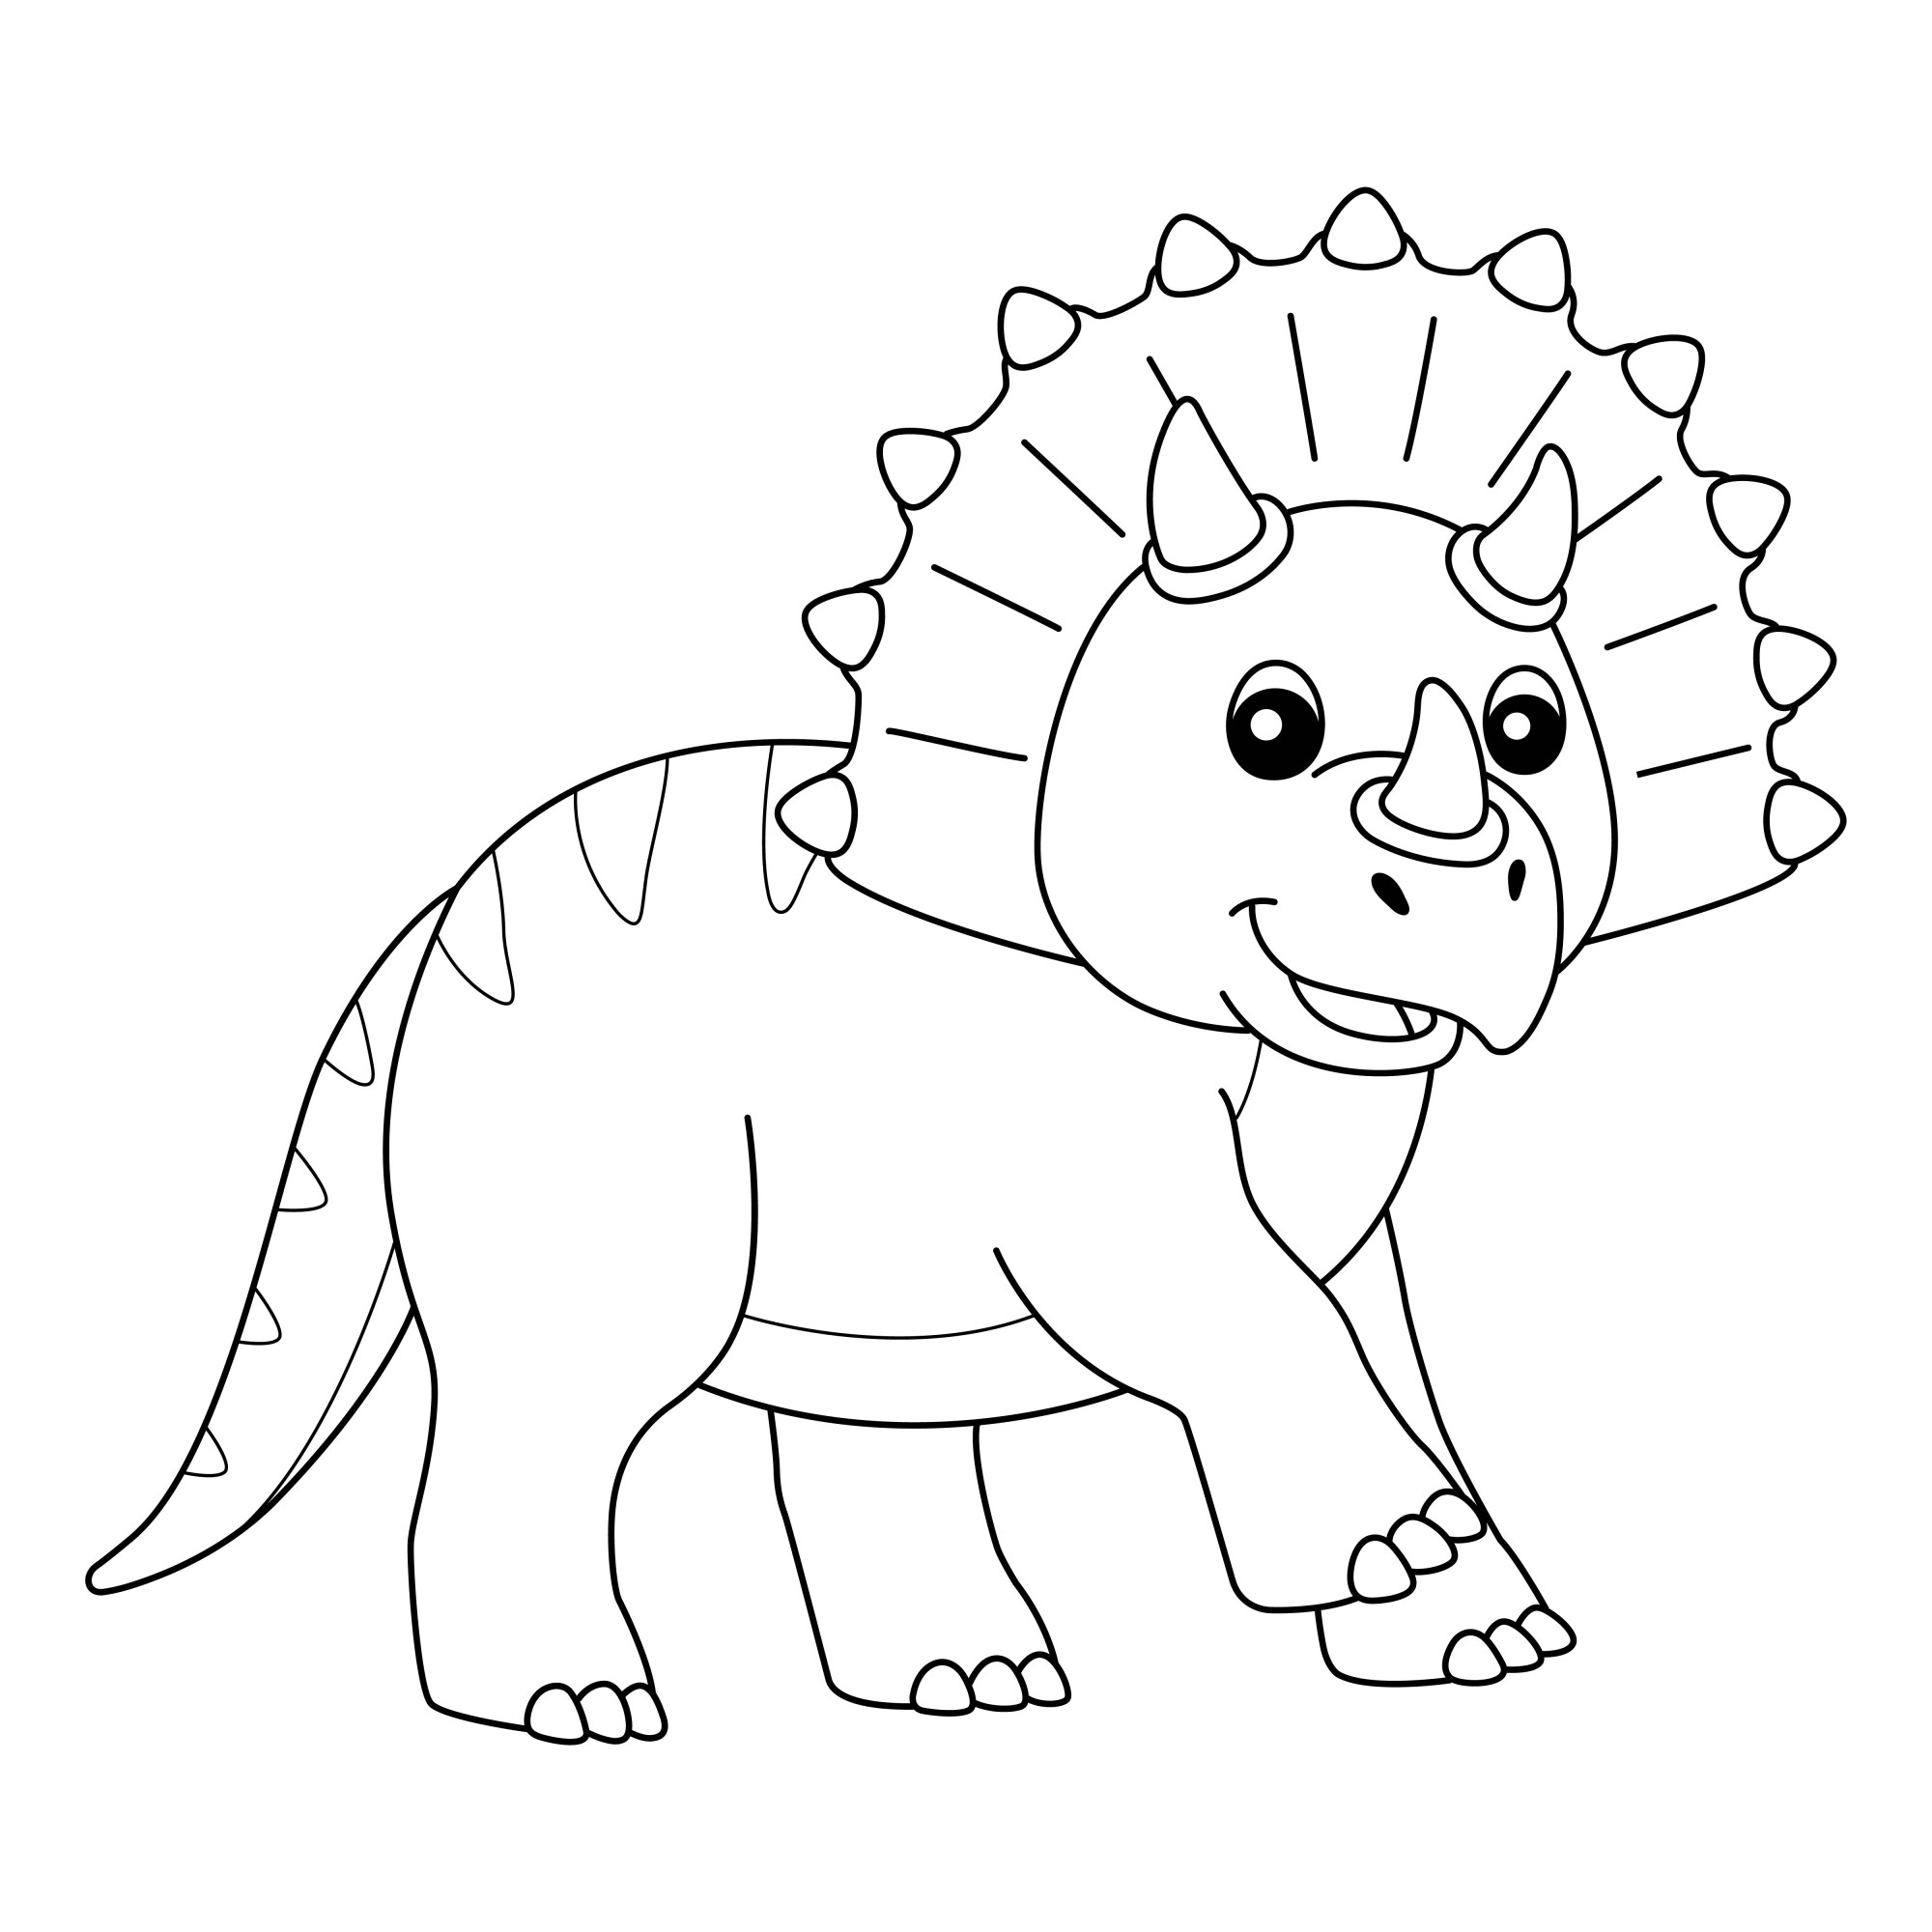 Раскраска для детей: динозавр трицератопс